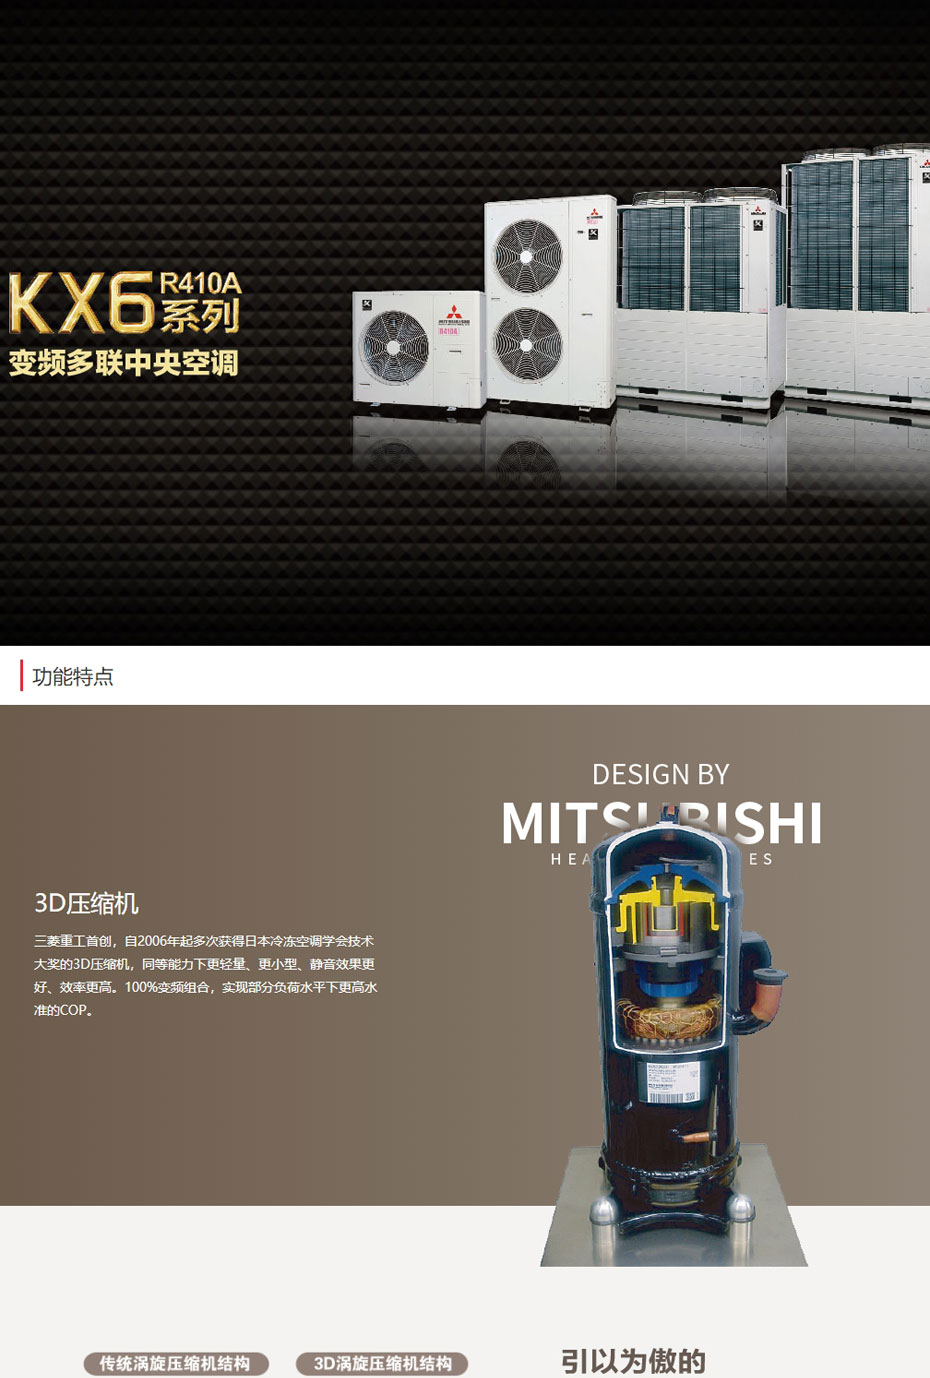 无锡三菱重工中央空调KX6系列_01